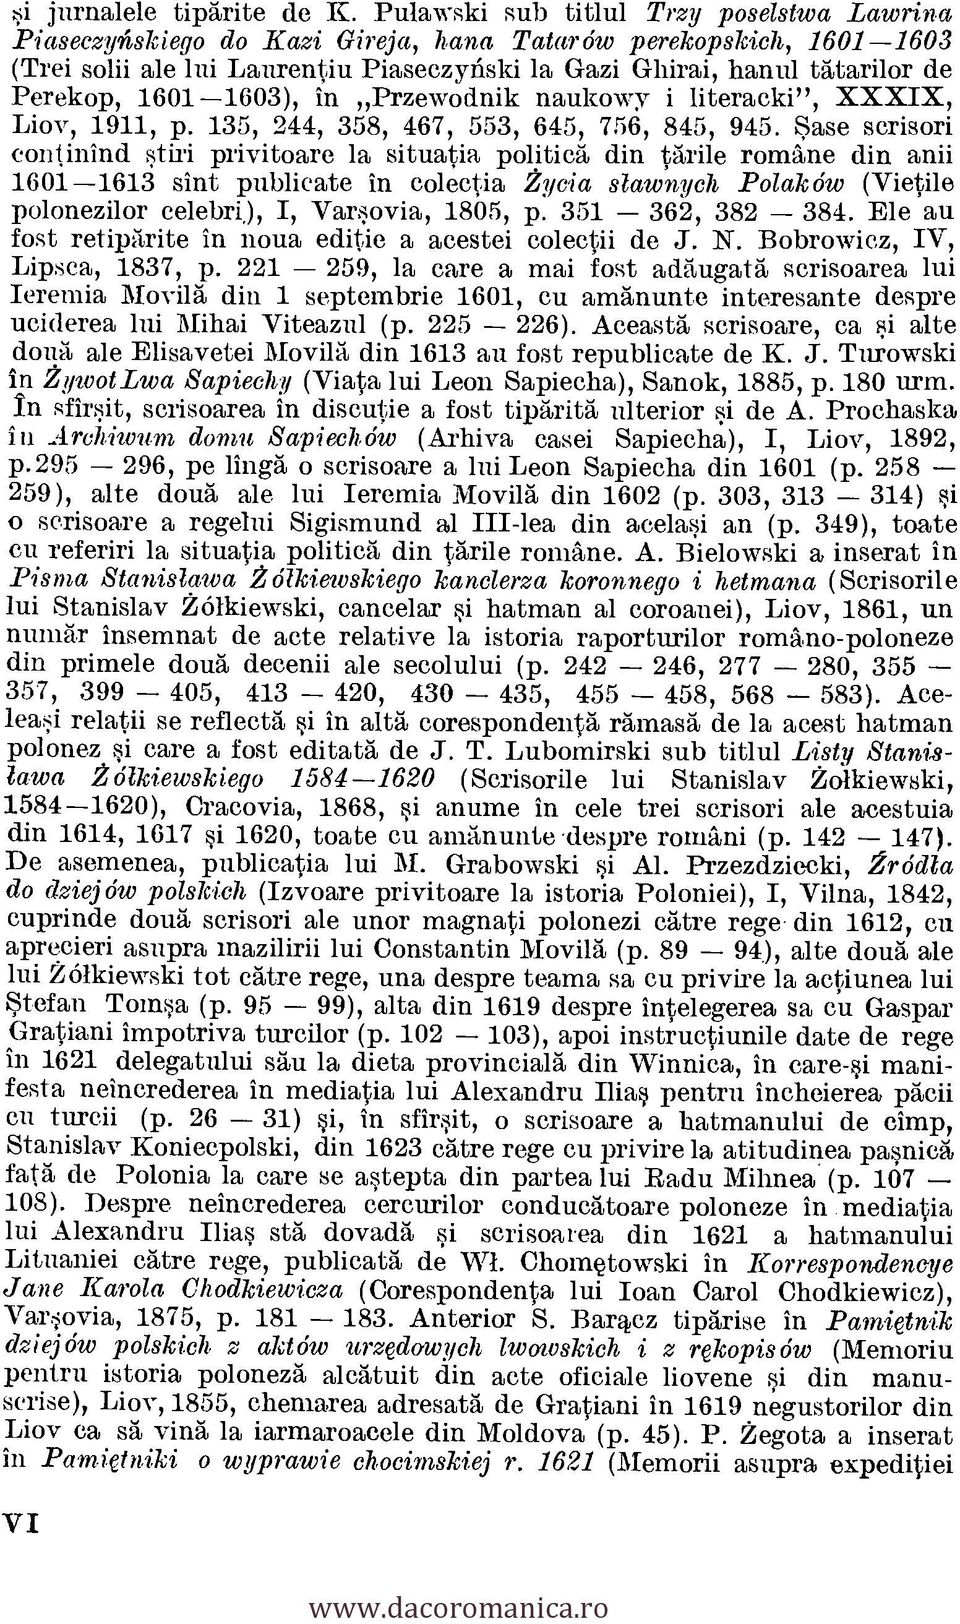 Perekop, 1601-1603), in Przewodnik naukowy i literacki", XXXIX, Liov, 1911, p. 135, 244, 358, 467, 553, 645, 756, 845, 945.